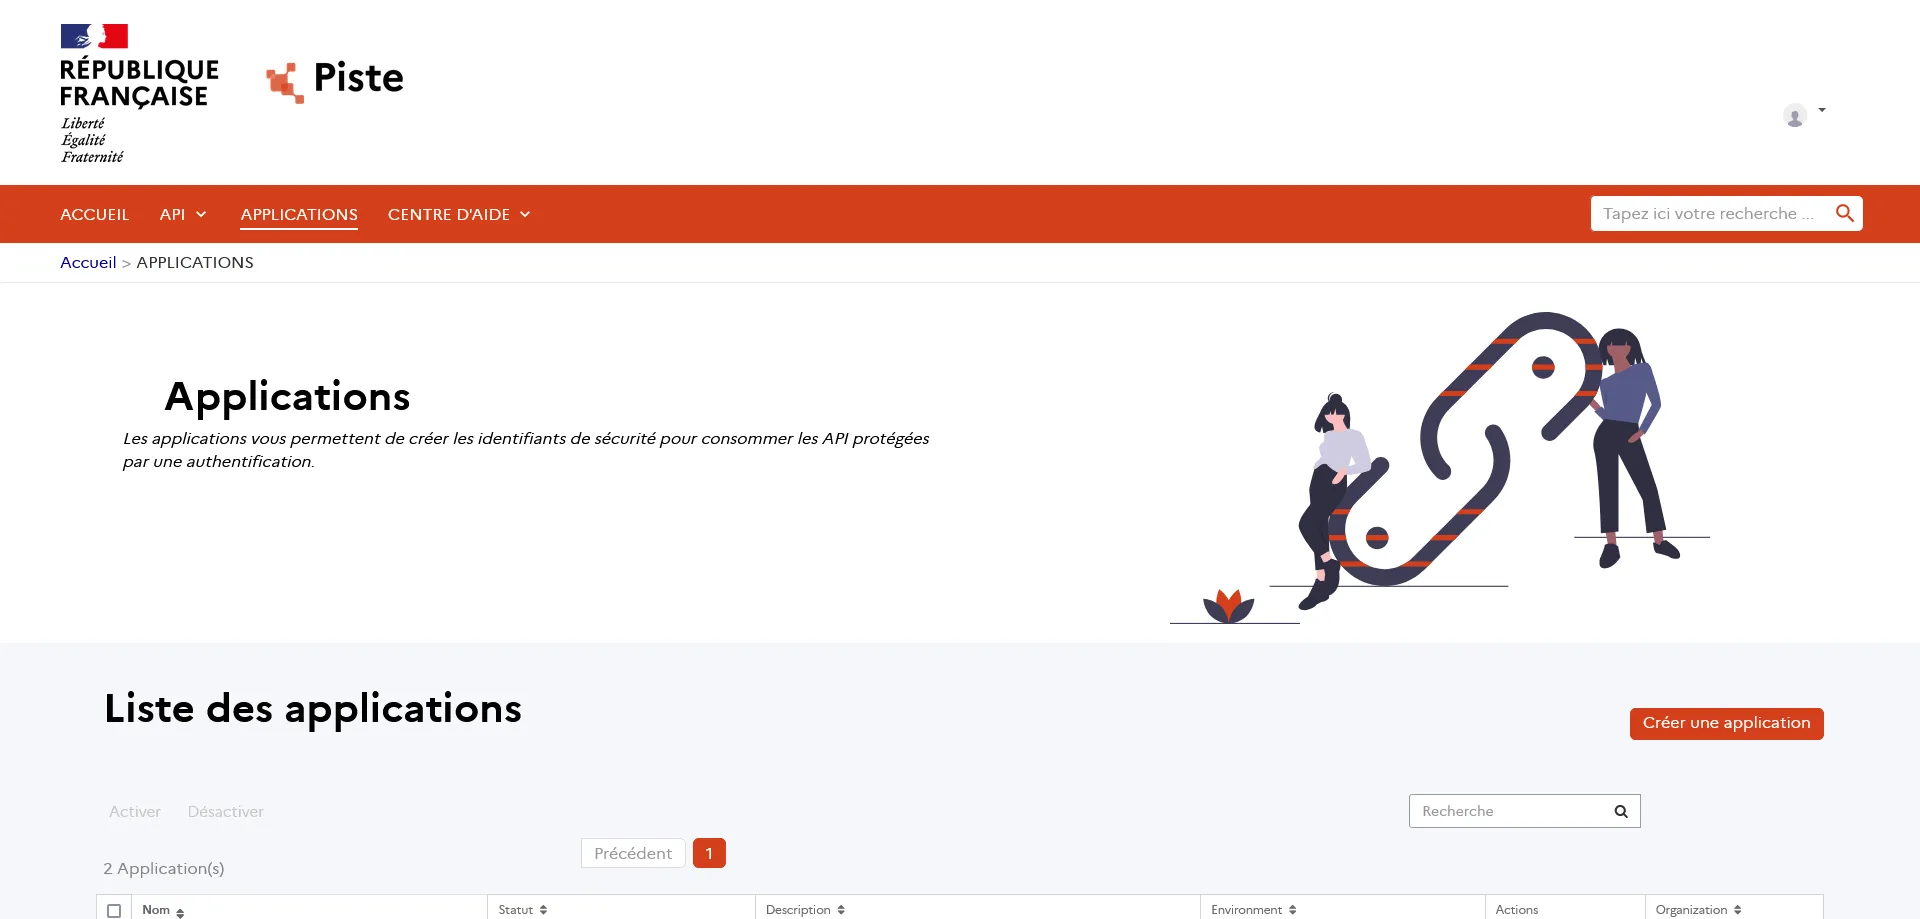 Capture d'écran du site de Piste, page de création d'une application